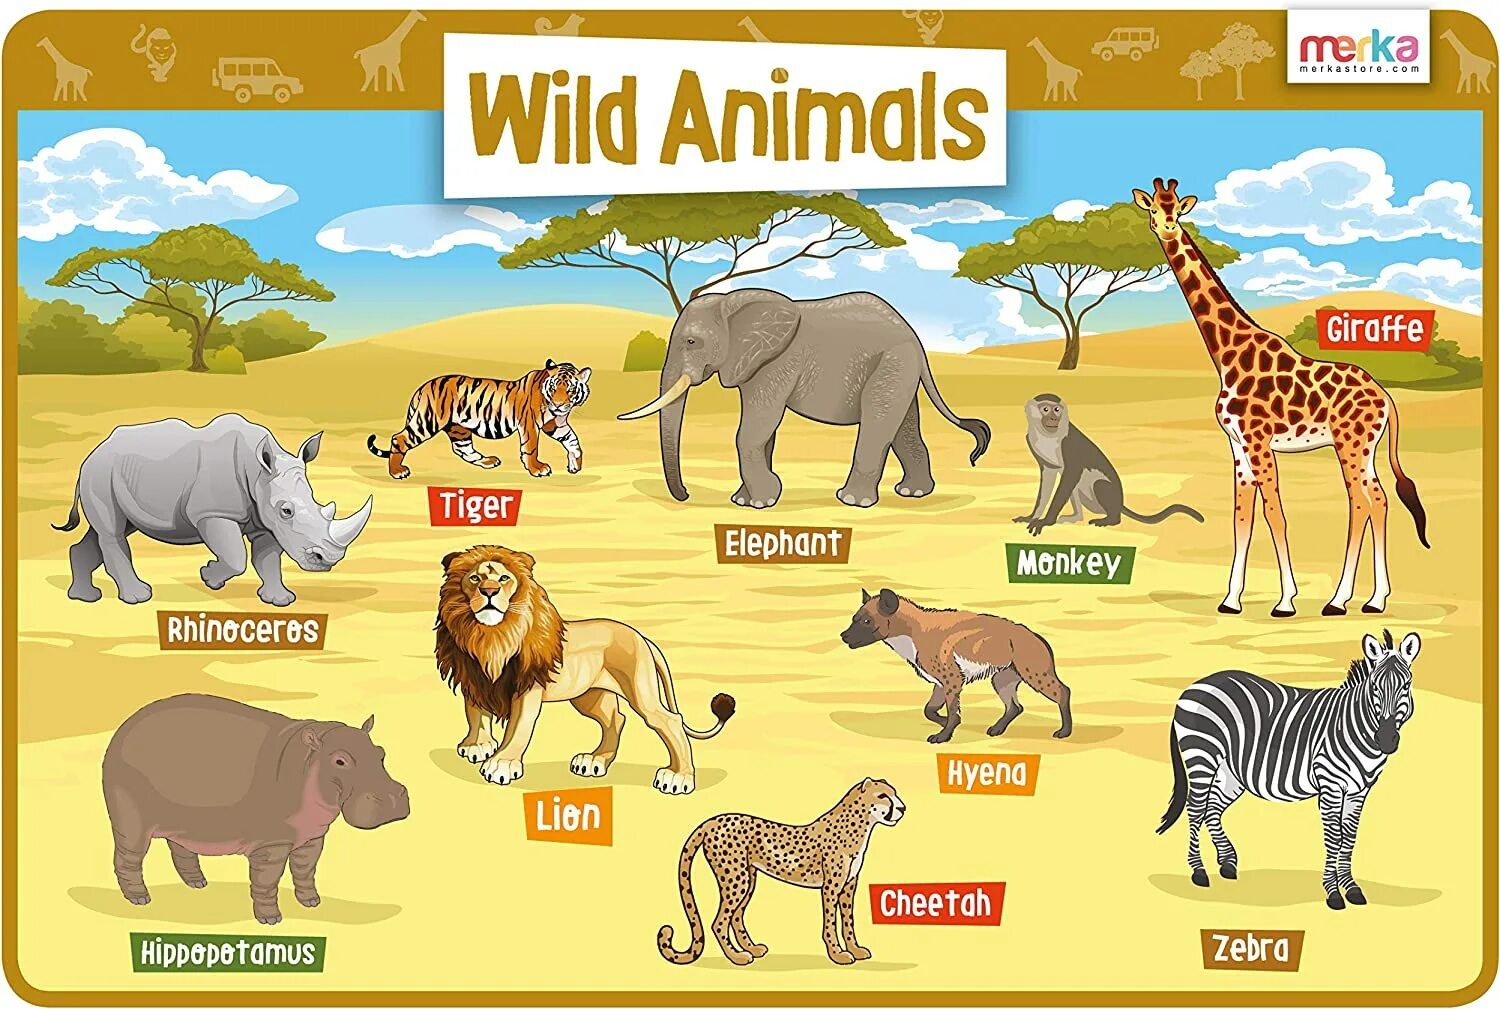 Wild animals essay